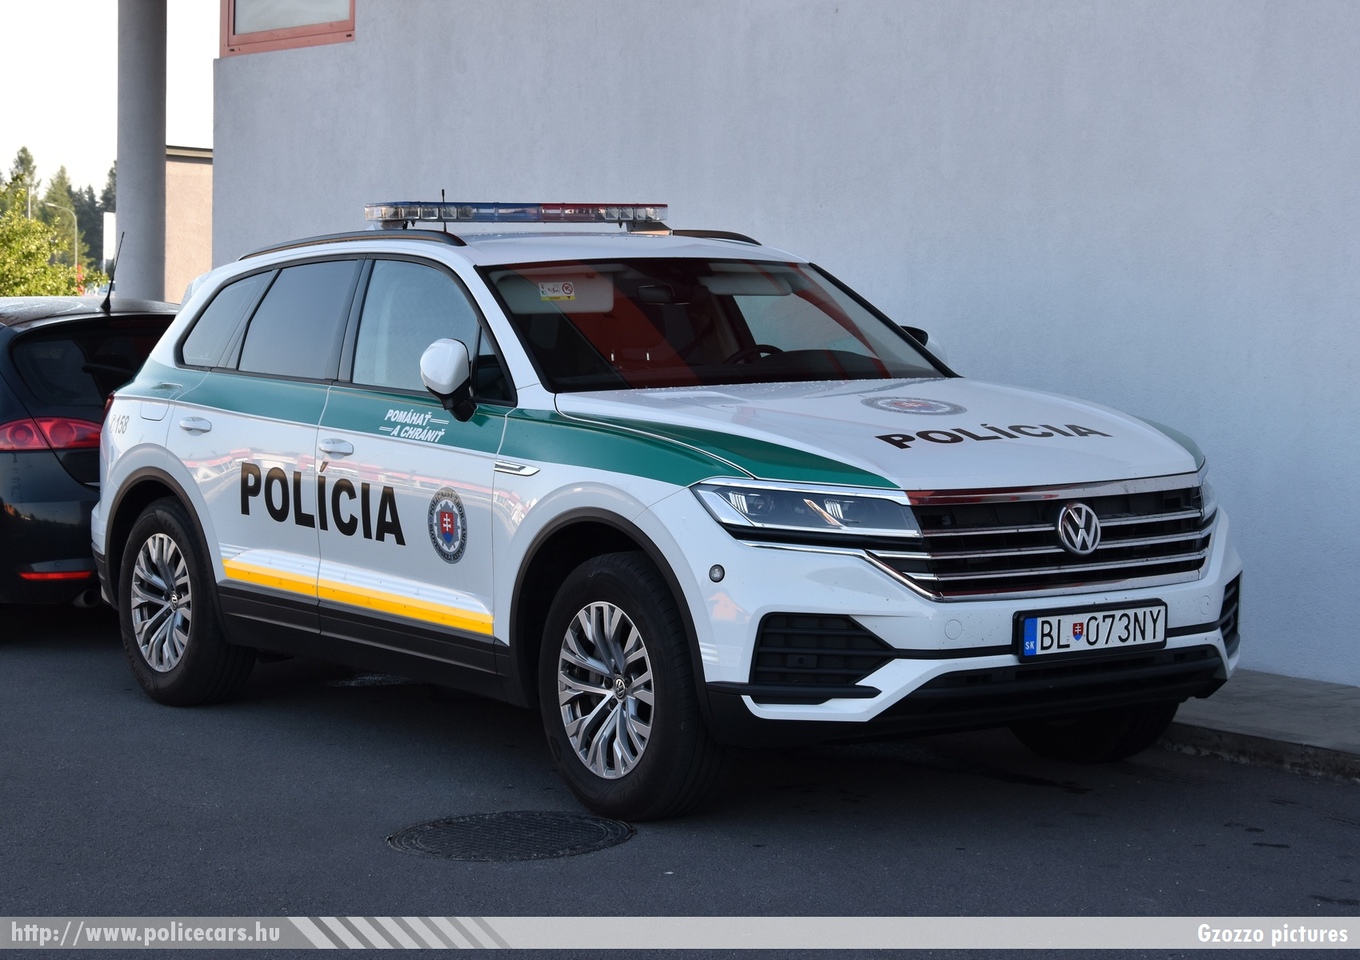 Volkswagen Touareg, fotó: Gzozzo pictures
Keywords: szlovák Szlovákia rendőr rendőrautó rendőrség police policecar Slovakia slovakian